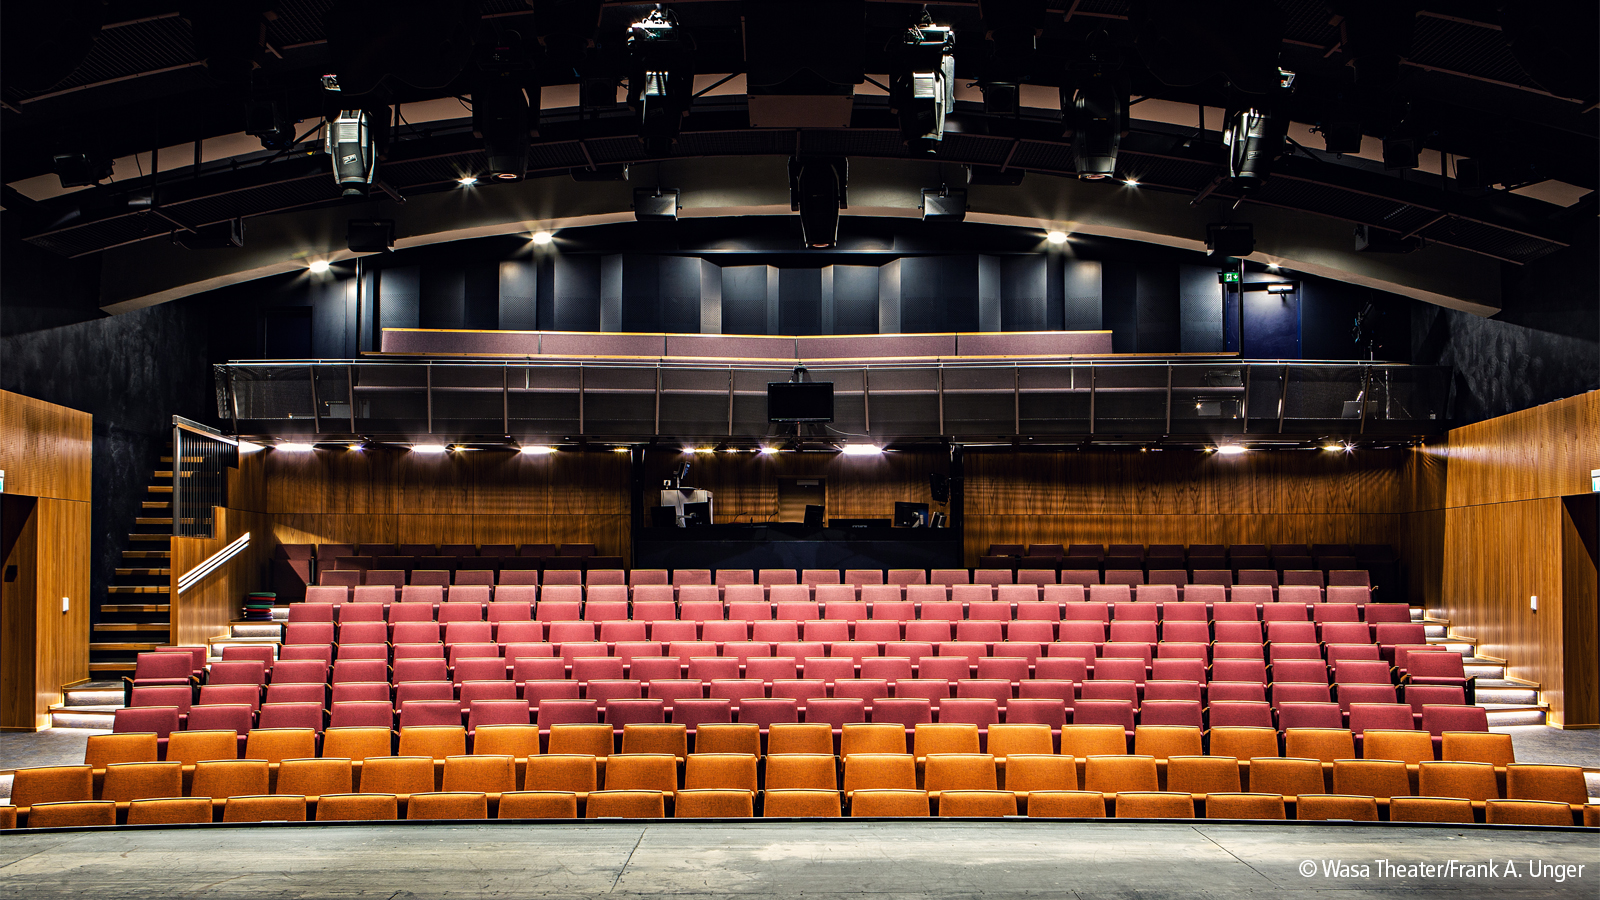 Das Wasa Theater, ein kleines, regionales Theater, wurde mit modernster Beleuchtungs- und Audiotechnologie ausgestattet. 